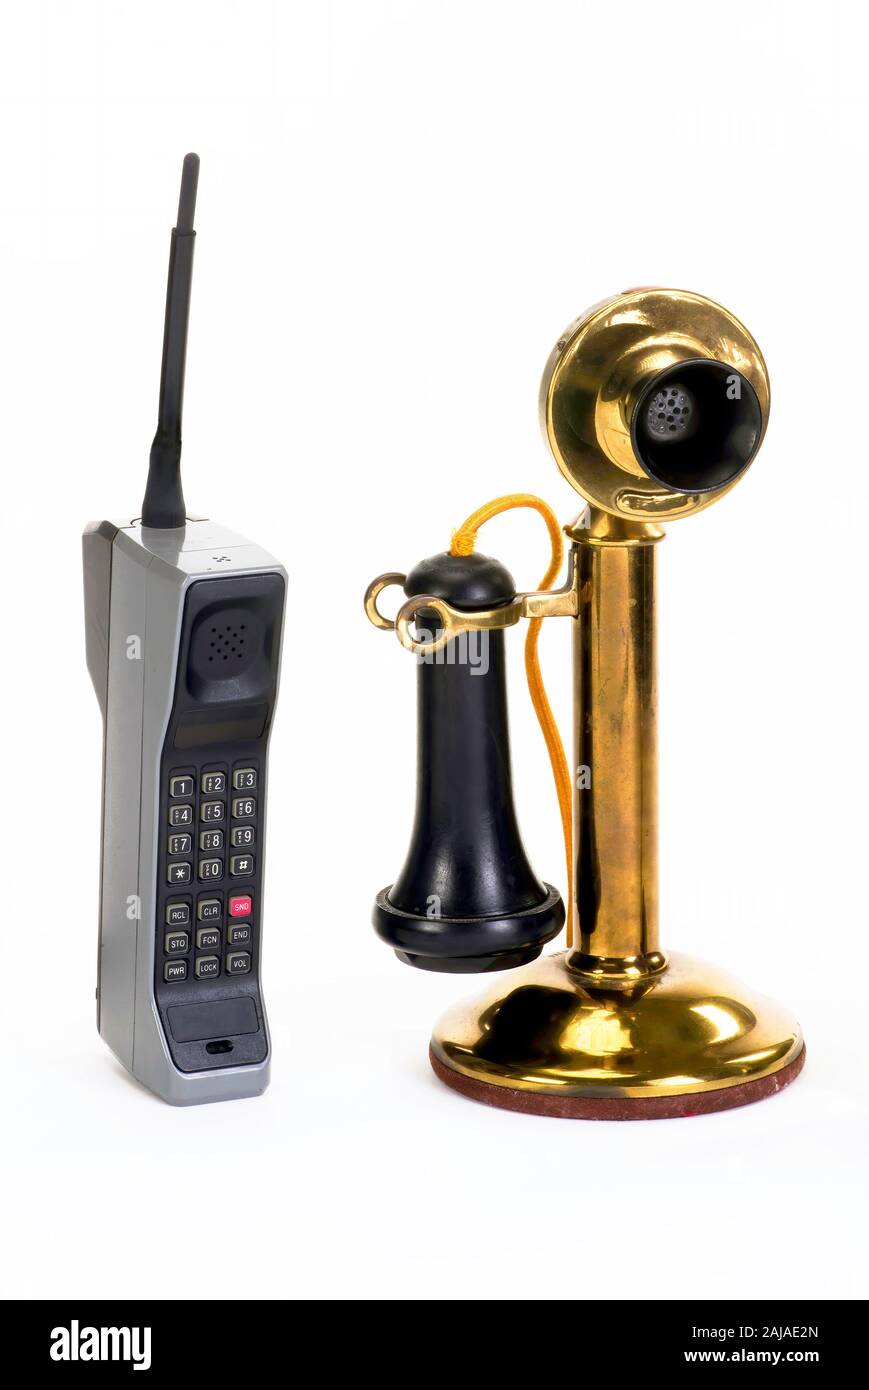 Ersten Ziegel Handy um 1980, frühe Candle stick Telefon um 1910 gemacht. Stockfoto